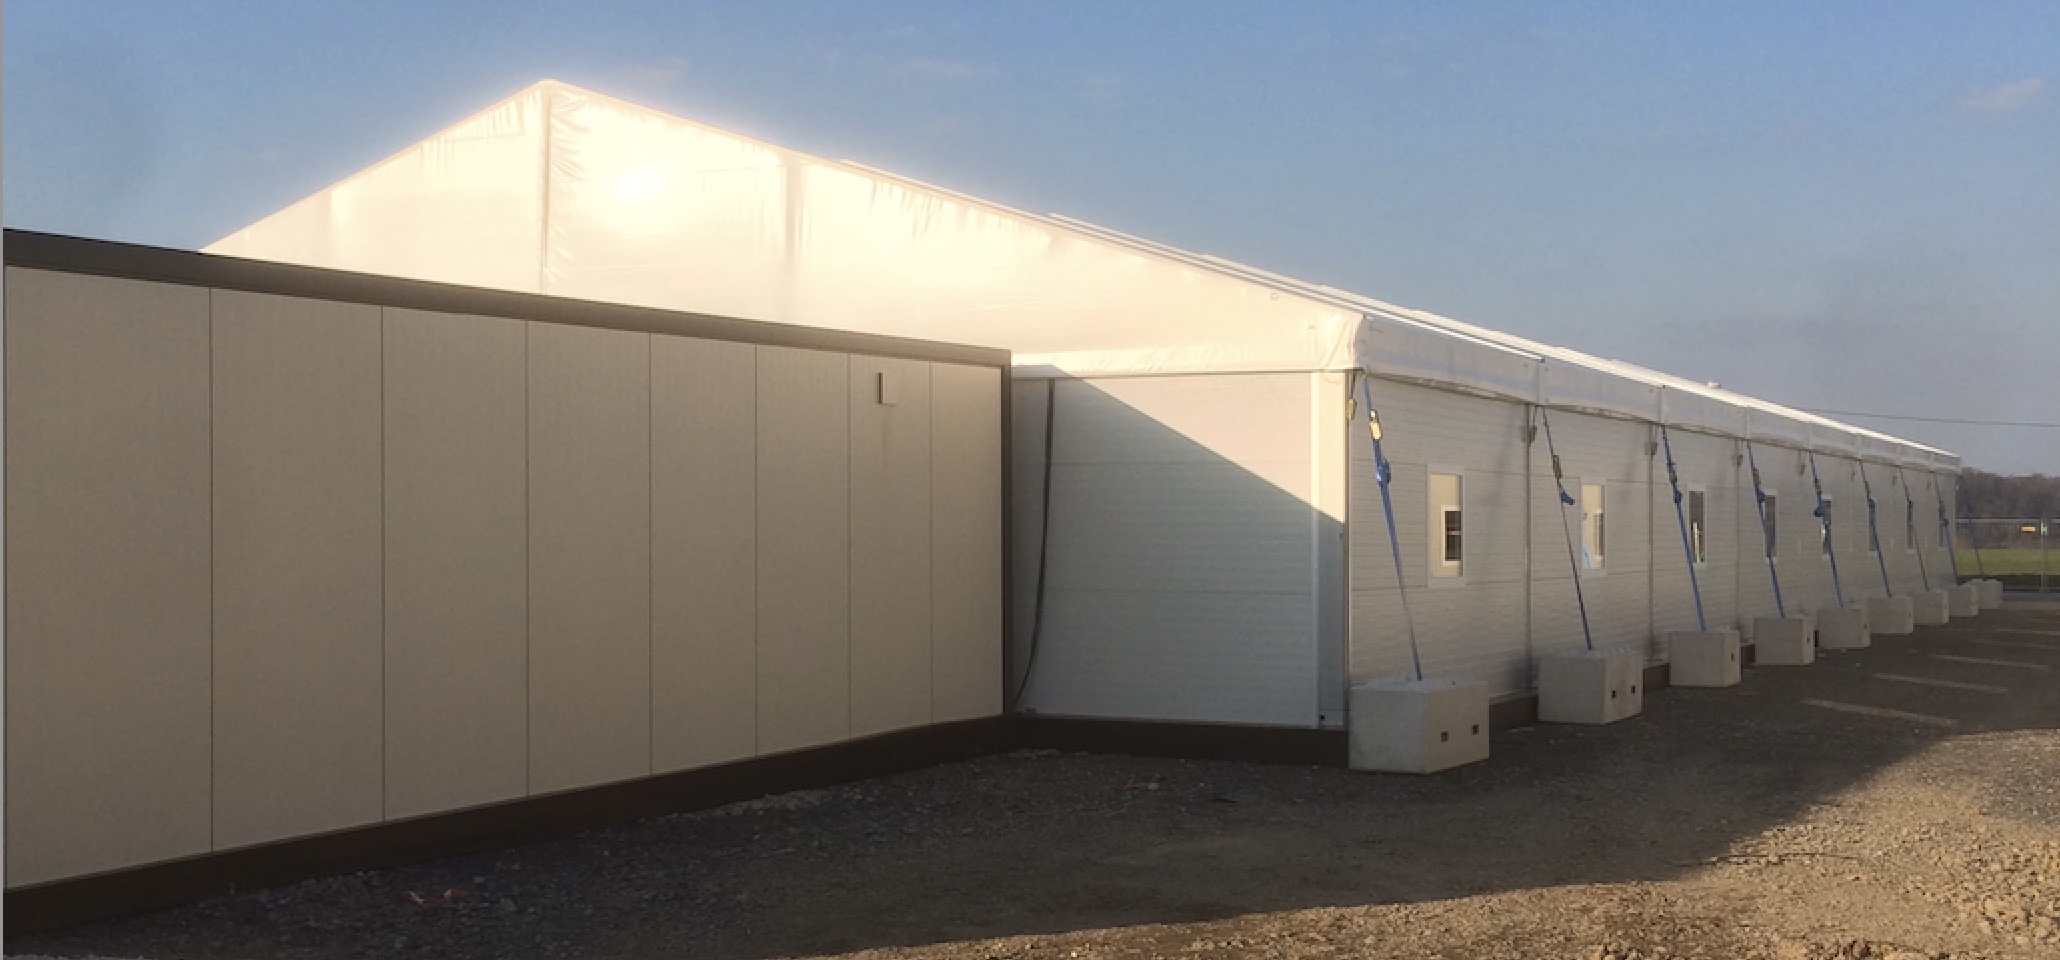 Zeltverleih Intersettle - Zeltanlage und Wohncontainer als Unterkunft für Asylbewerber, Flüchtlinge - Außenansicht Zelthalle